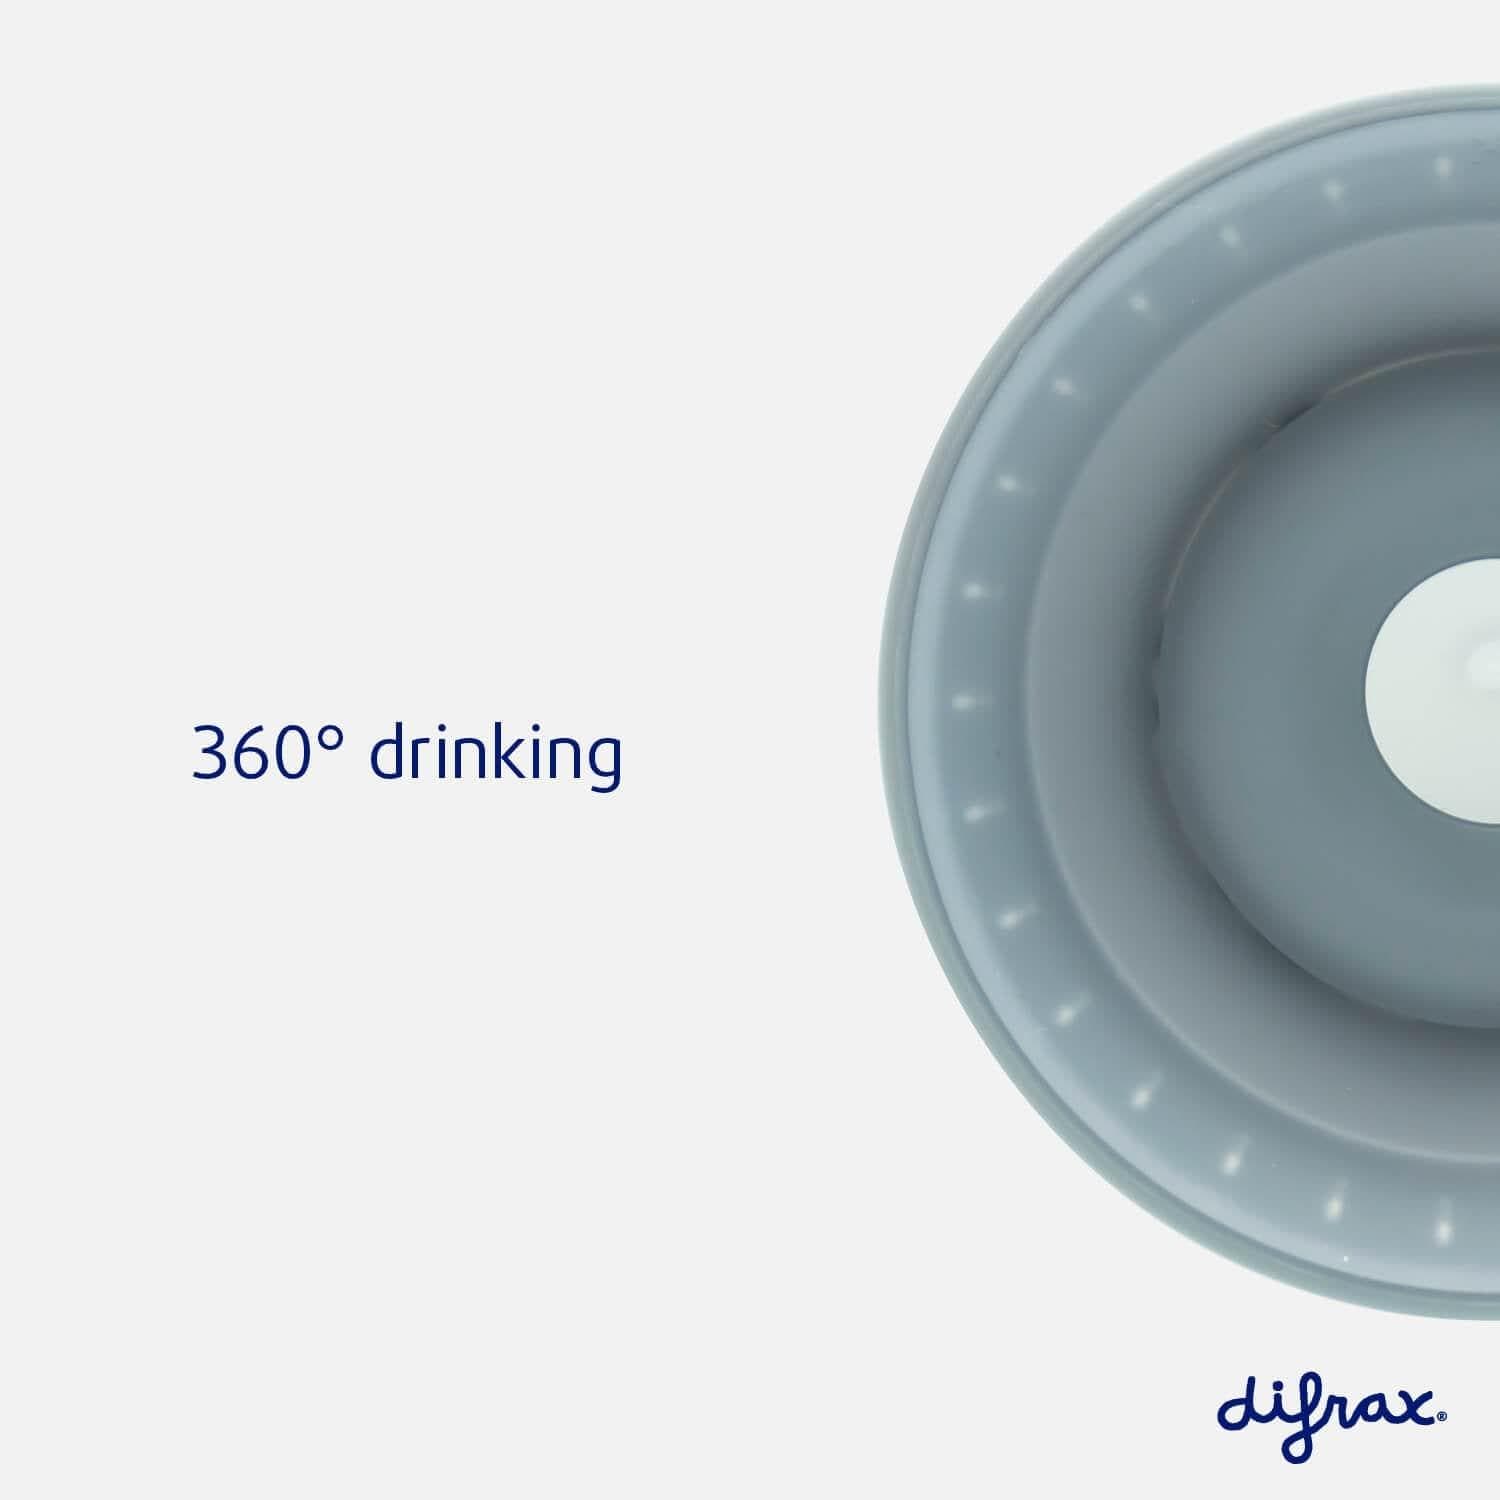 360 graden beker - Difrax